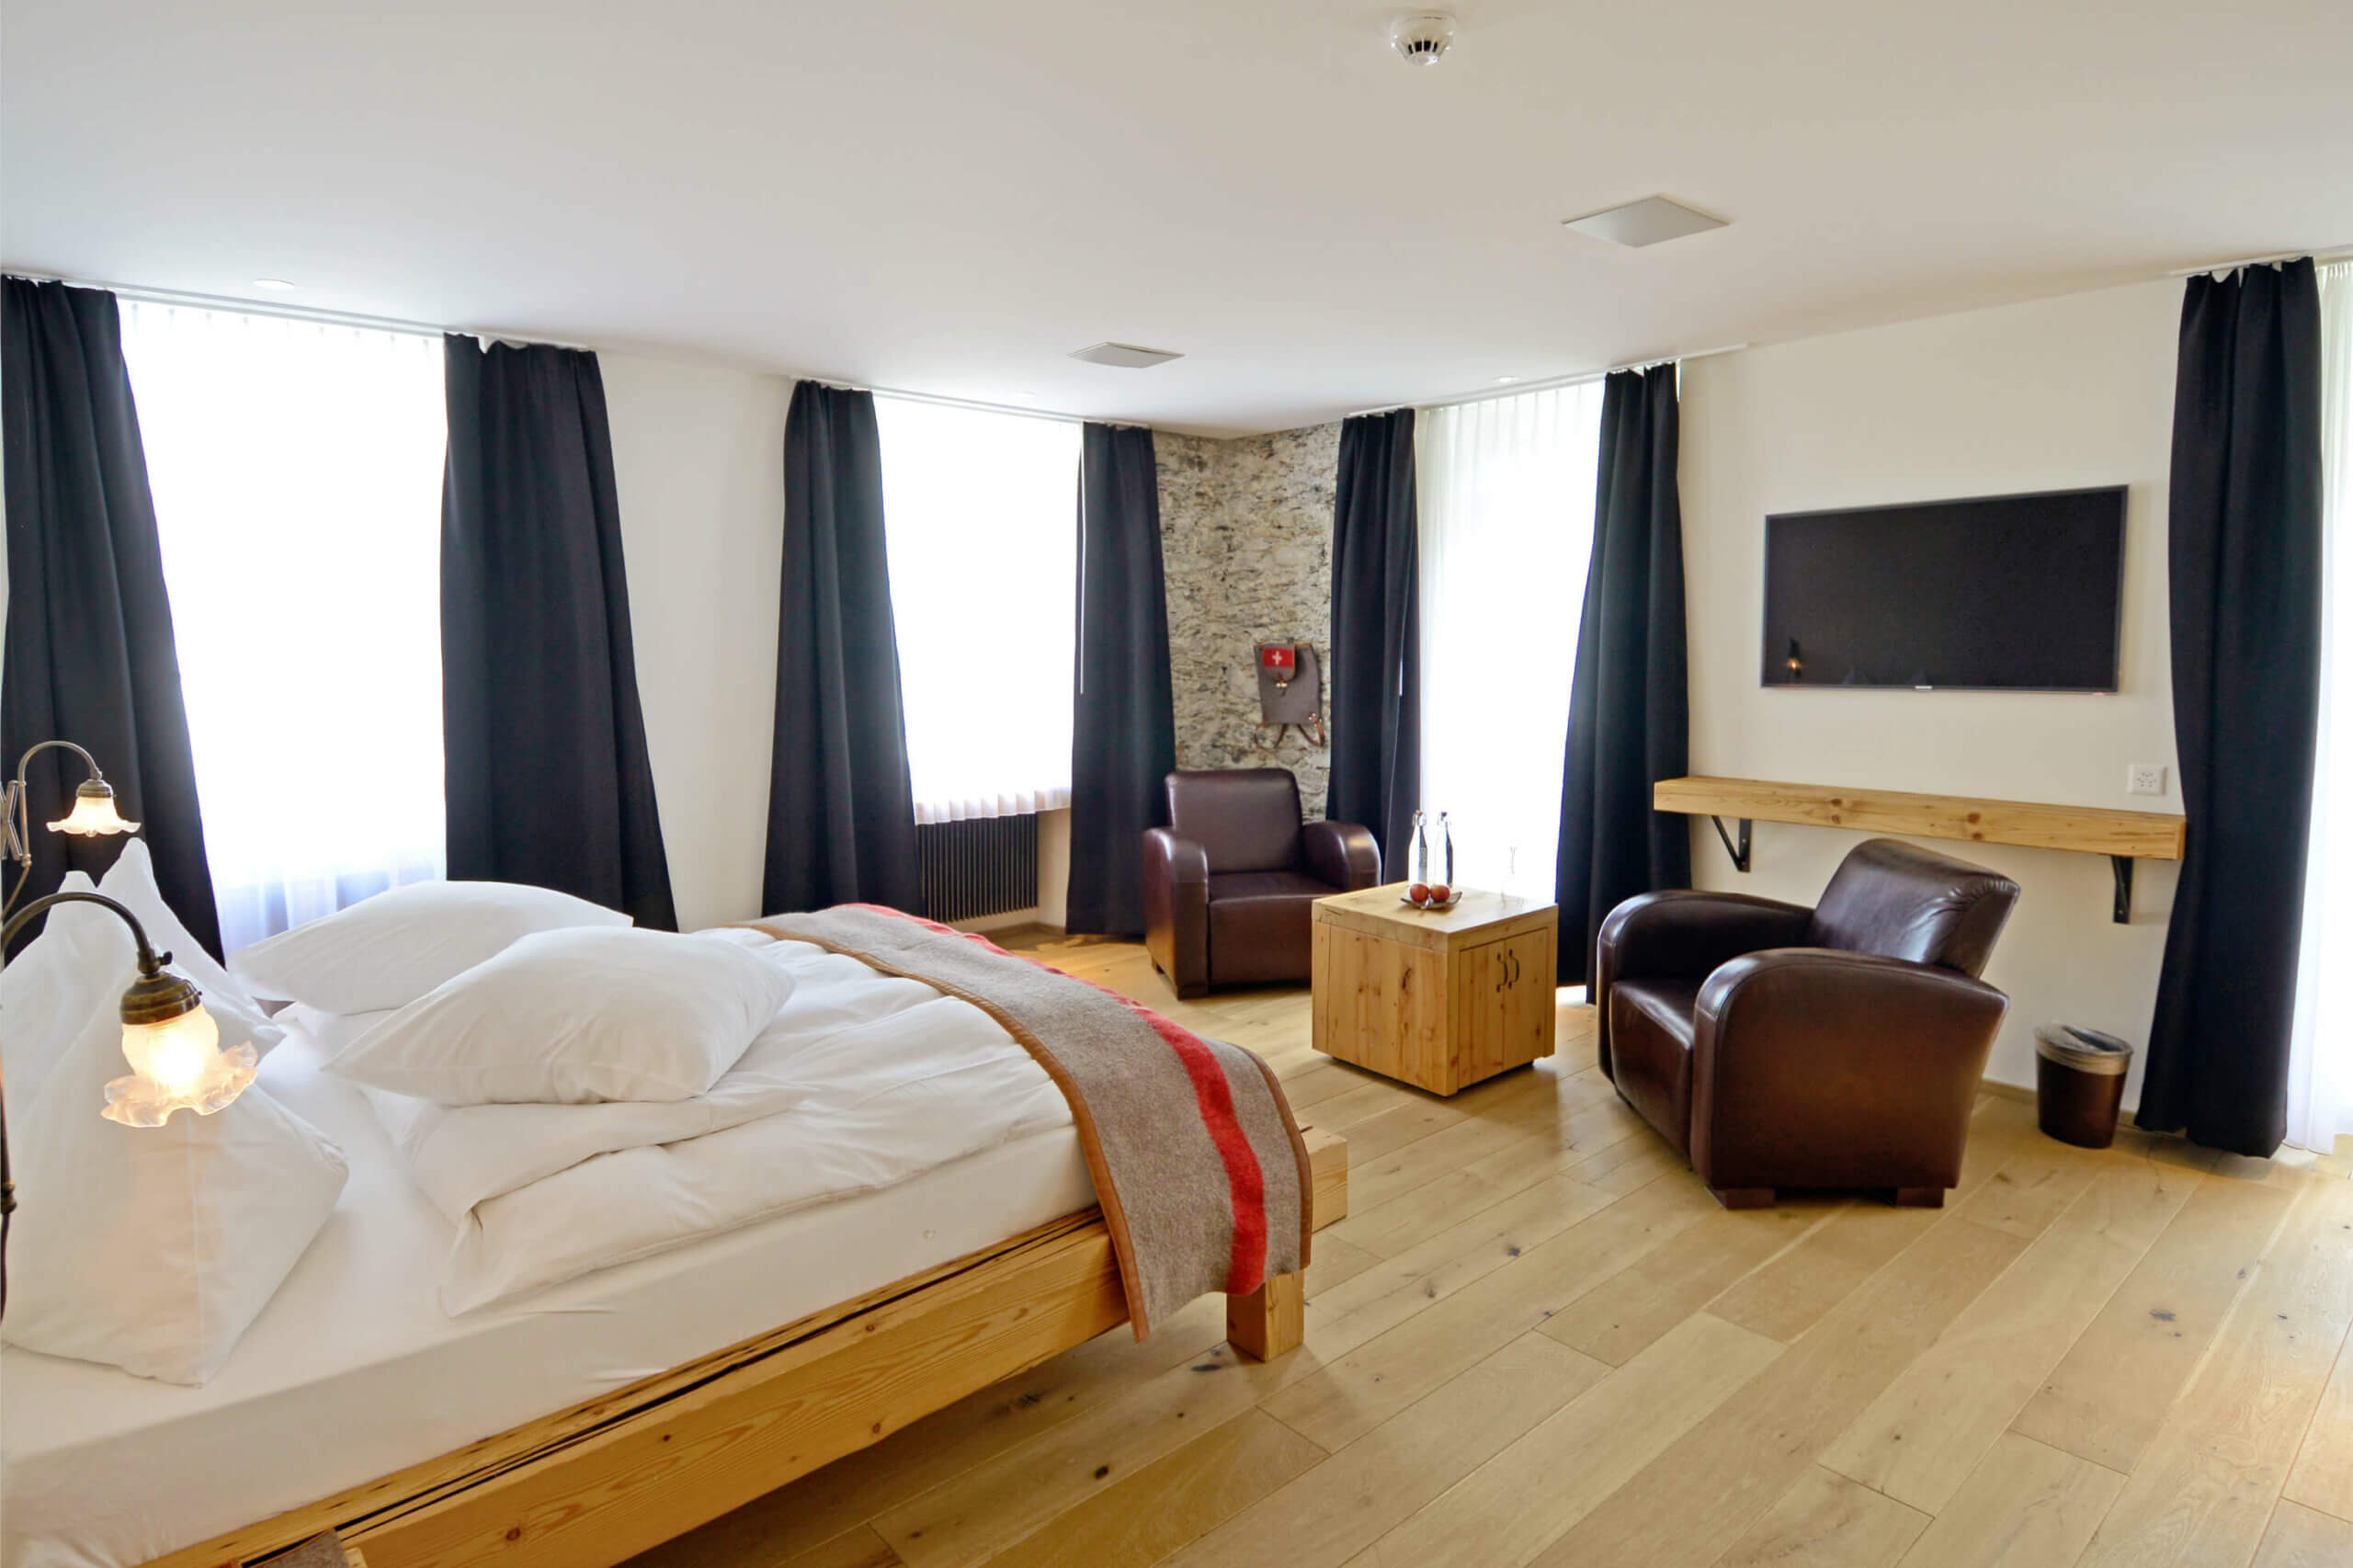 Zimmereinrichtung für Hotels aus Holz